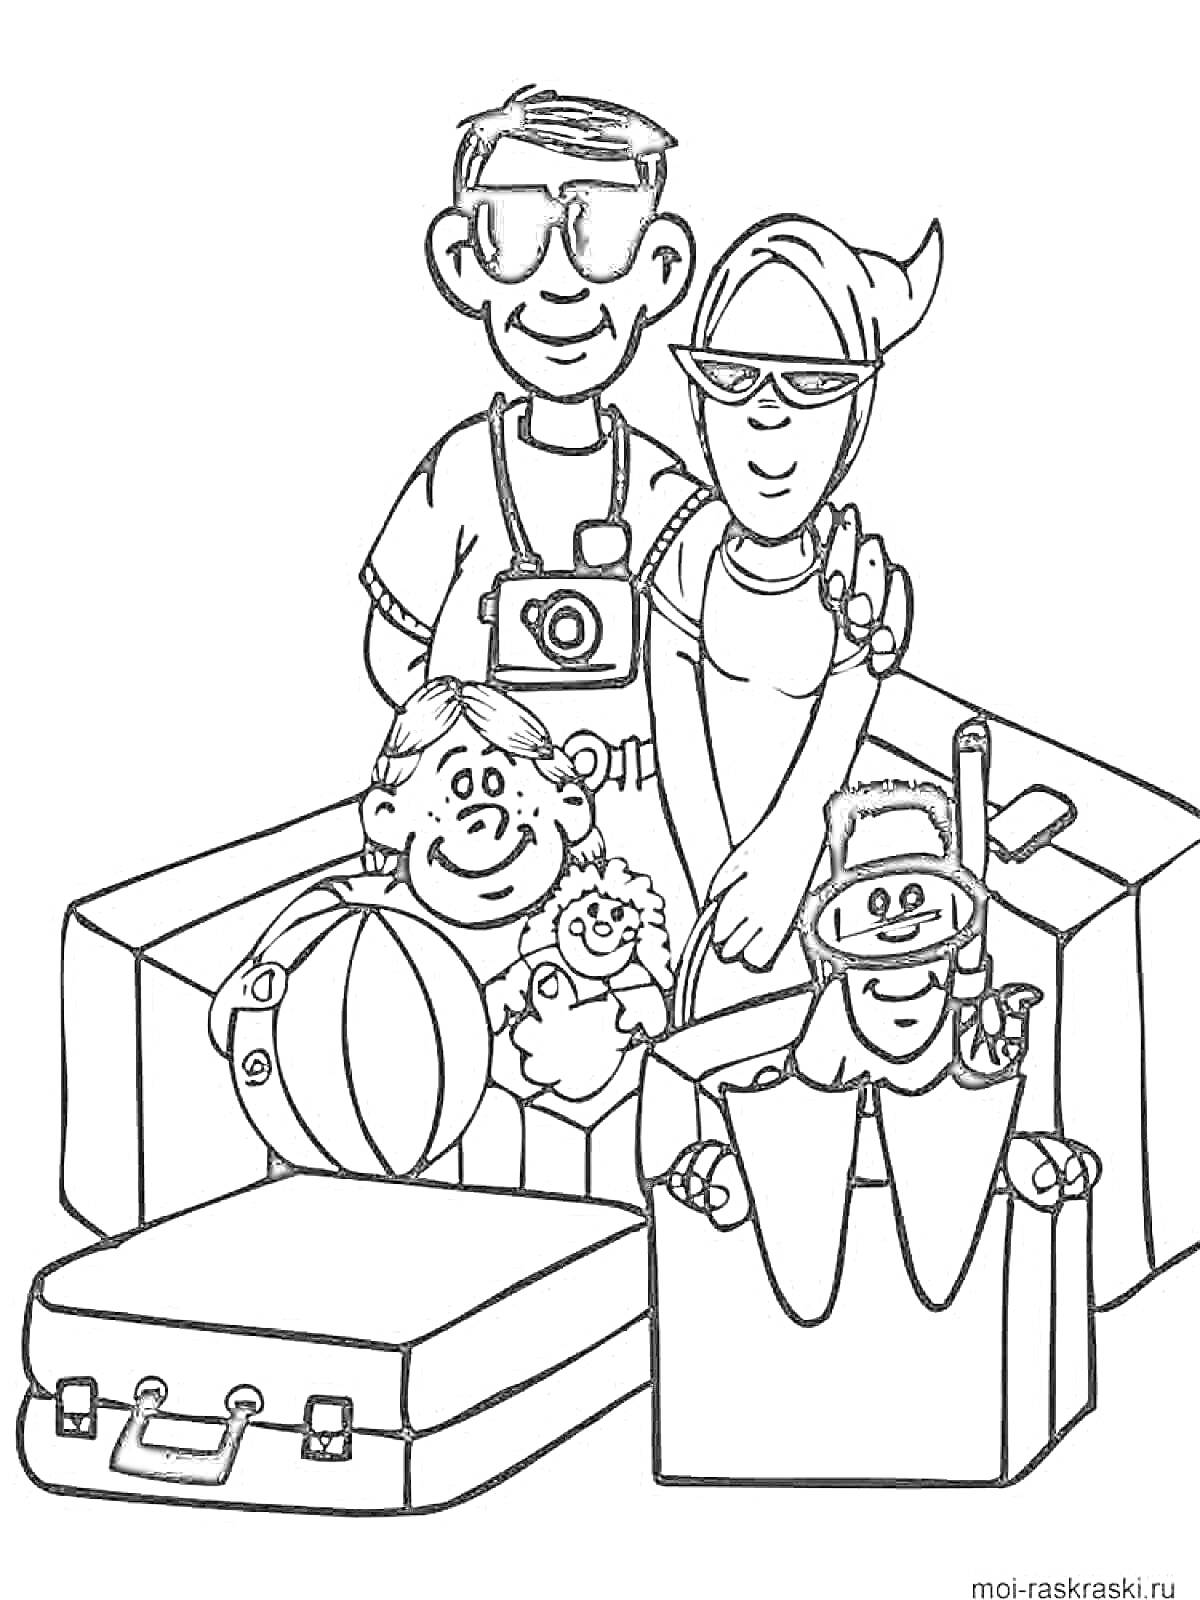 Раскраска Семья на отдыхе с игрушками и чемоданом